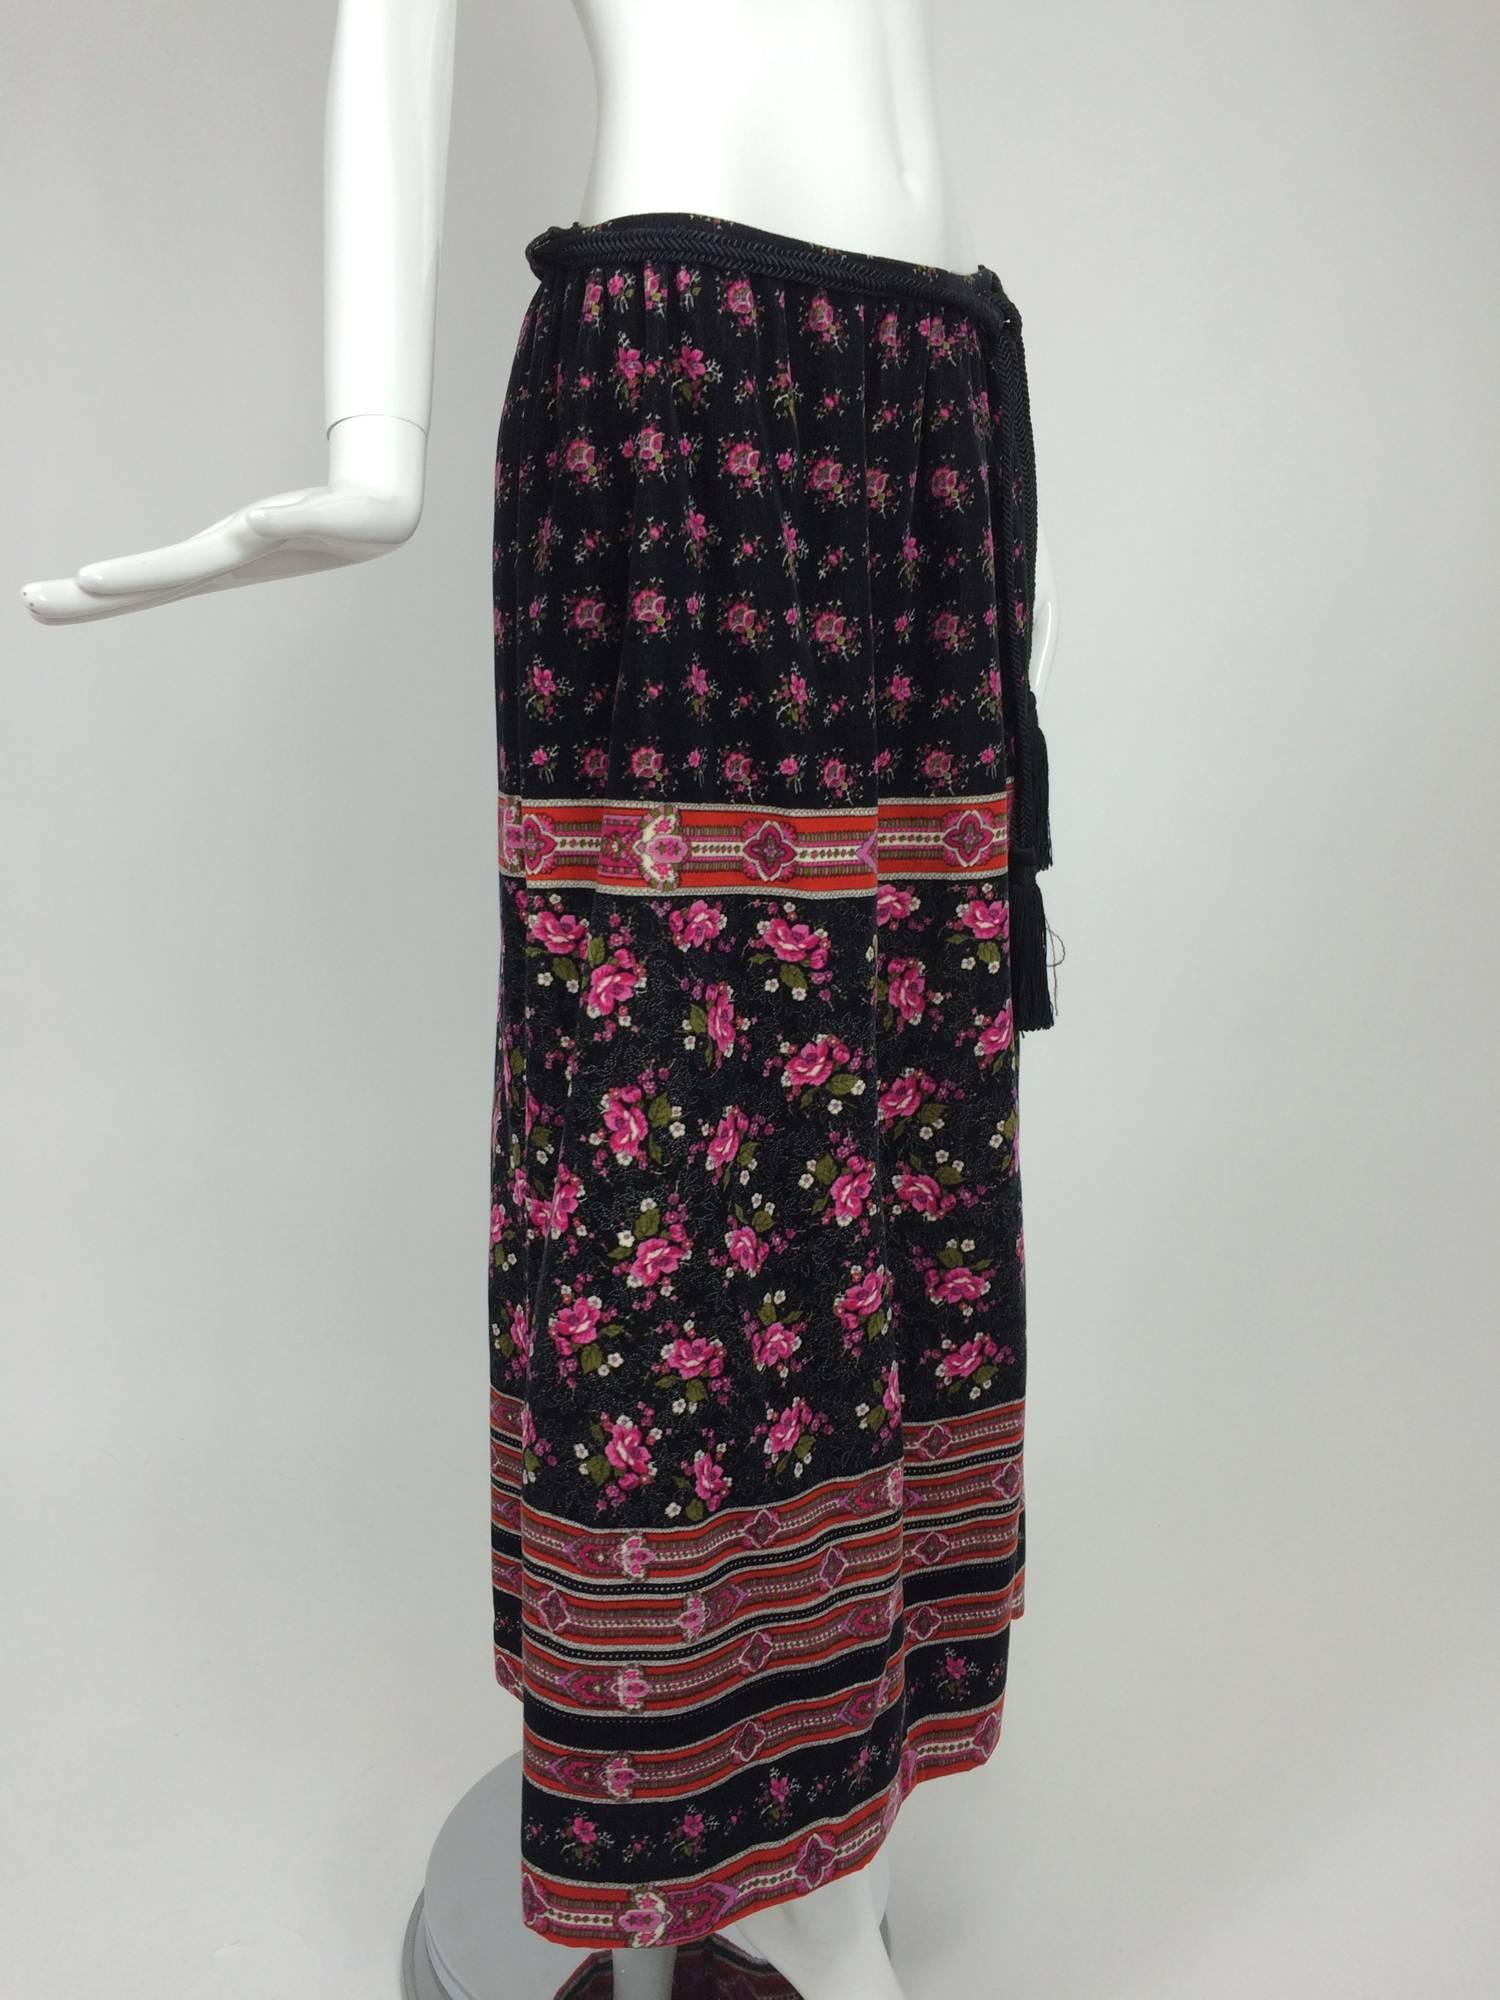 Women's Lanvin floral printed velvet maxi skirt with tassel cord belt 1970s